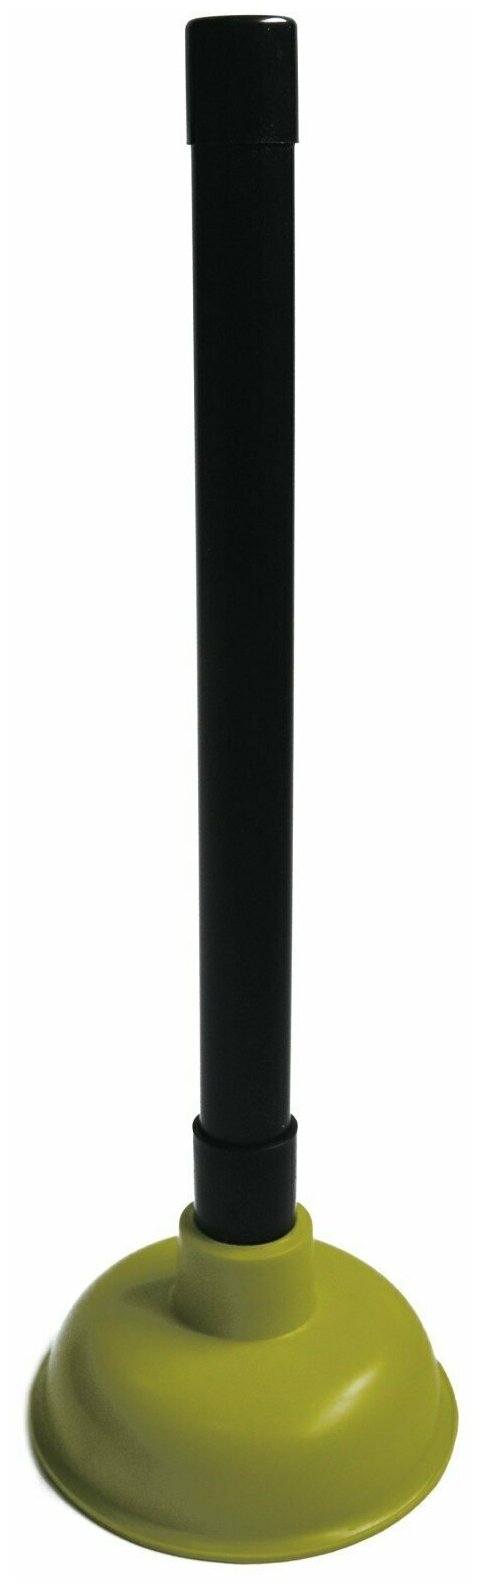 Вантуз для раковины/ванны Vidage 10,5см, с пластиковой ручкой, цвет: салатовый,черный